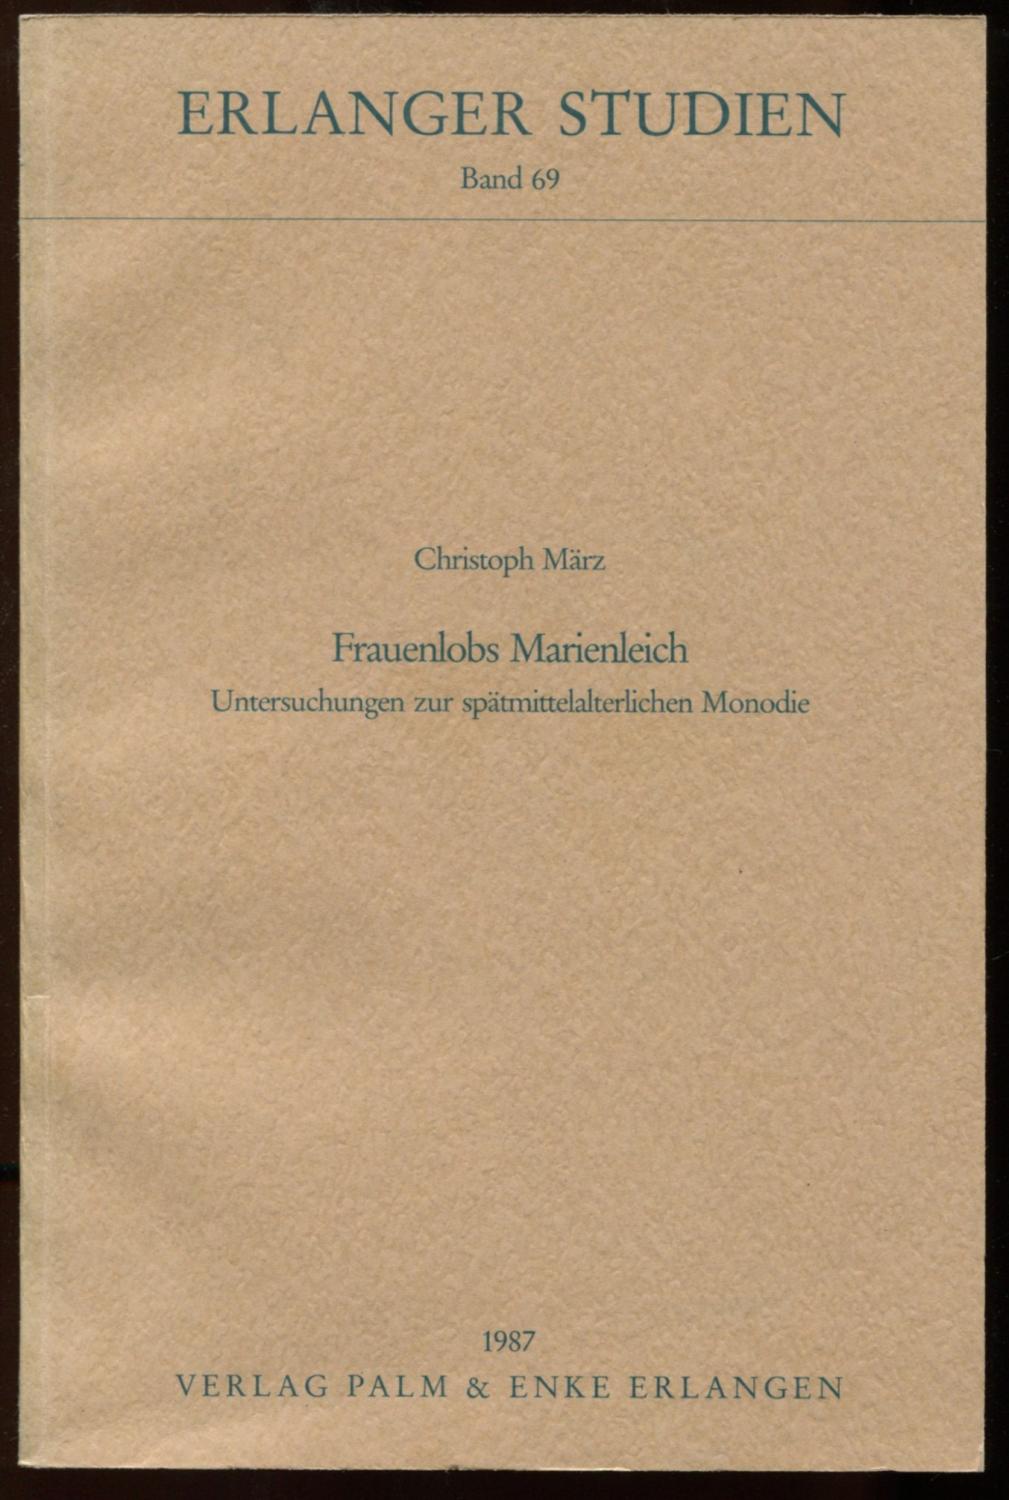 Frauenlobs Marienleich. Untersuchungen zur spätmittelalterlichen Monolodie [= Erlanger Studien, Band 69] - März, Christoph